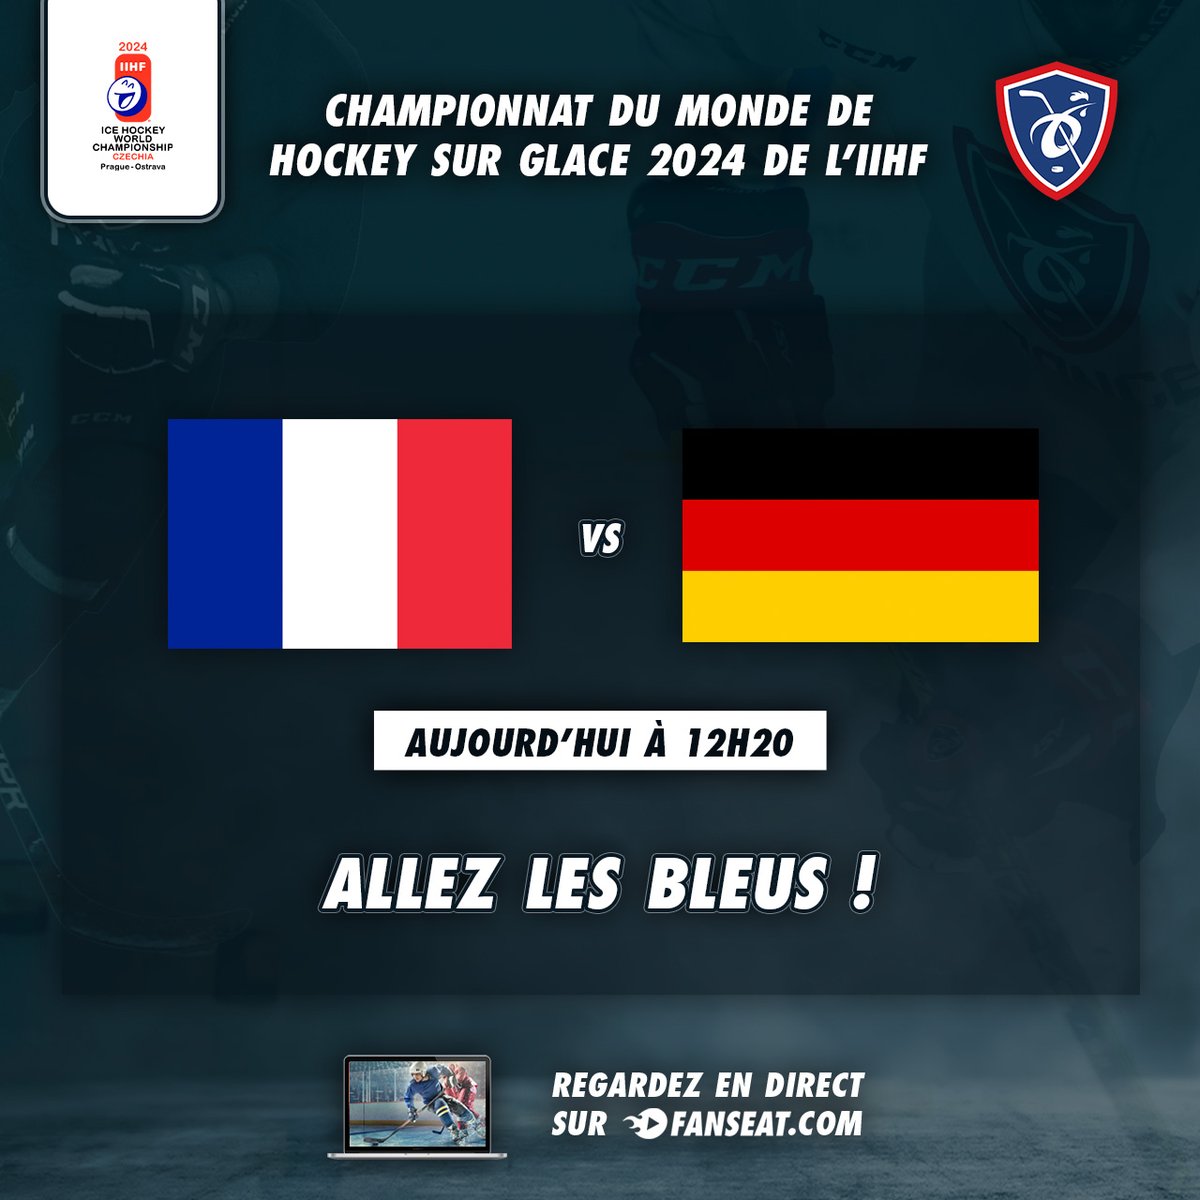 C'est le dernier match de l'Équipe de France au mondial aujourd'hui, face à l'équipe d'Allemagne. Allez les Bleus ! 📺 En direct sur FANSEAT @Hockey_FRA #EdFHockey #AllezLesBleus